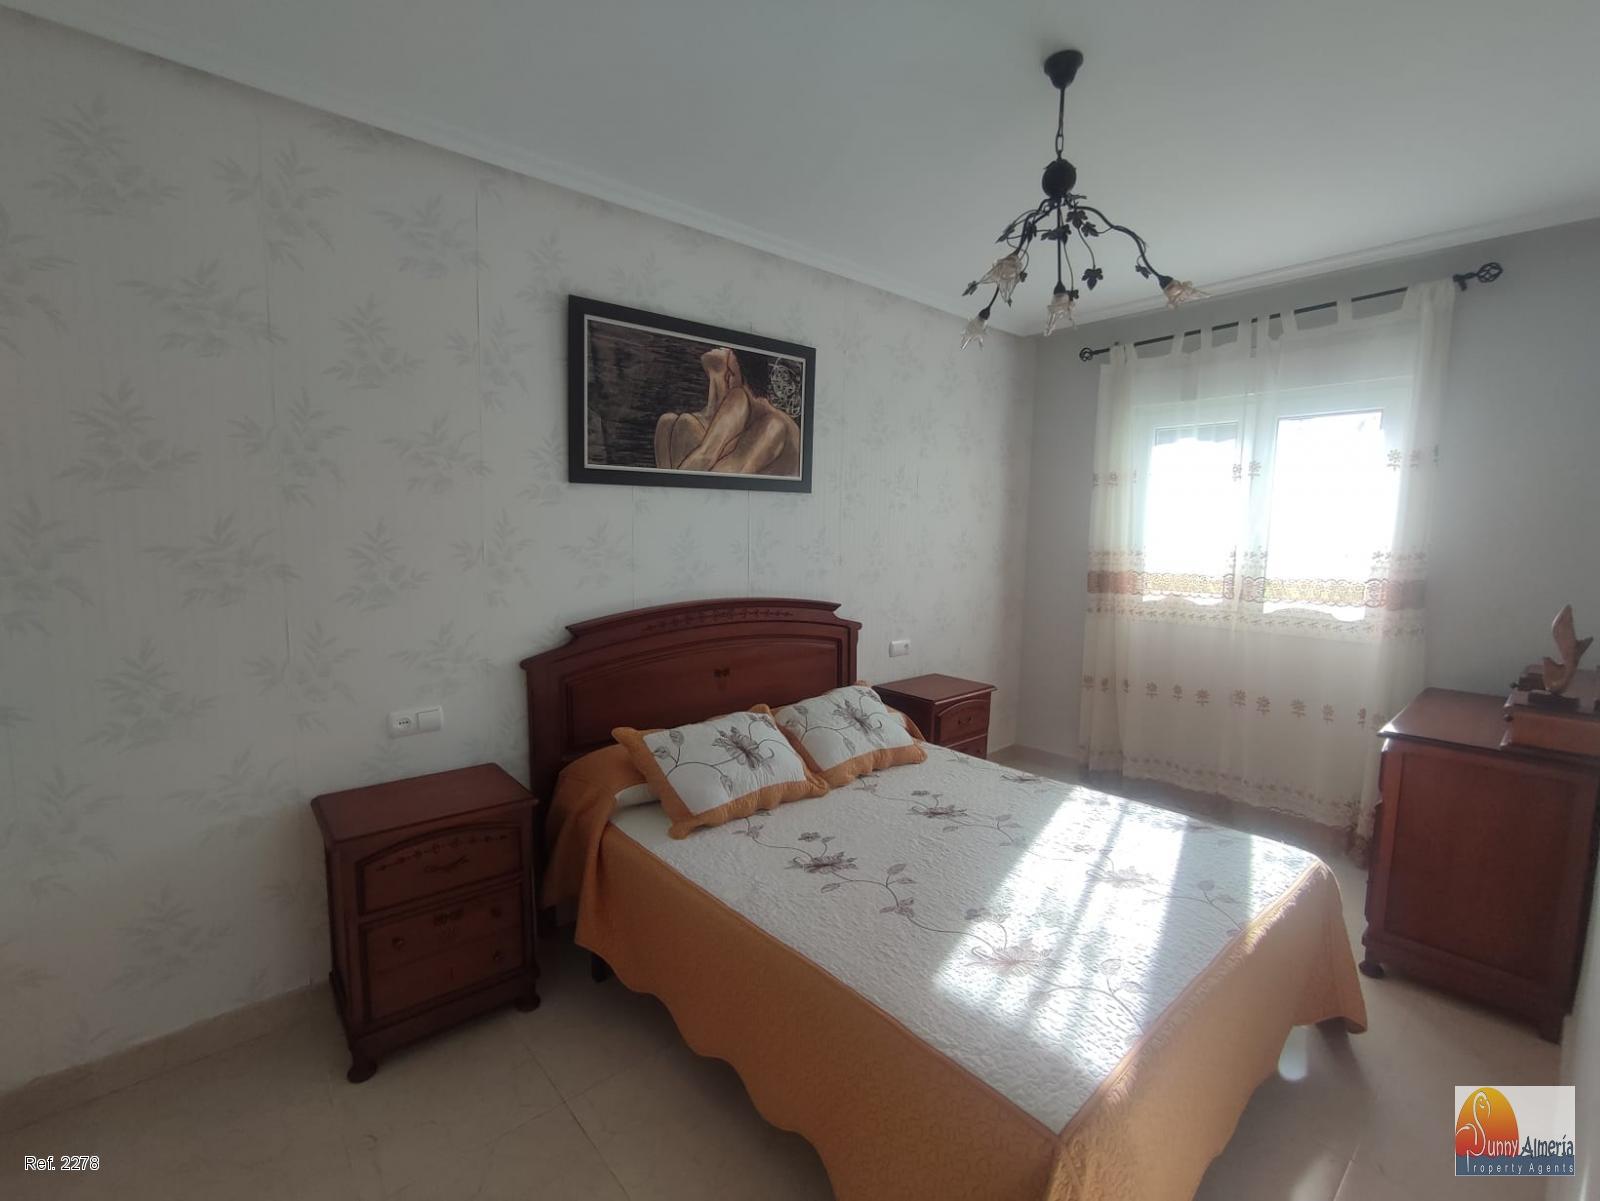 Luxury Apartment for rent in Calle Fosforito 4 (Roquetas de Mar), 950 €/month (Season)